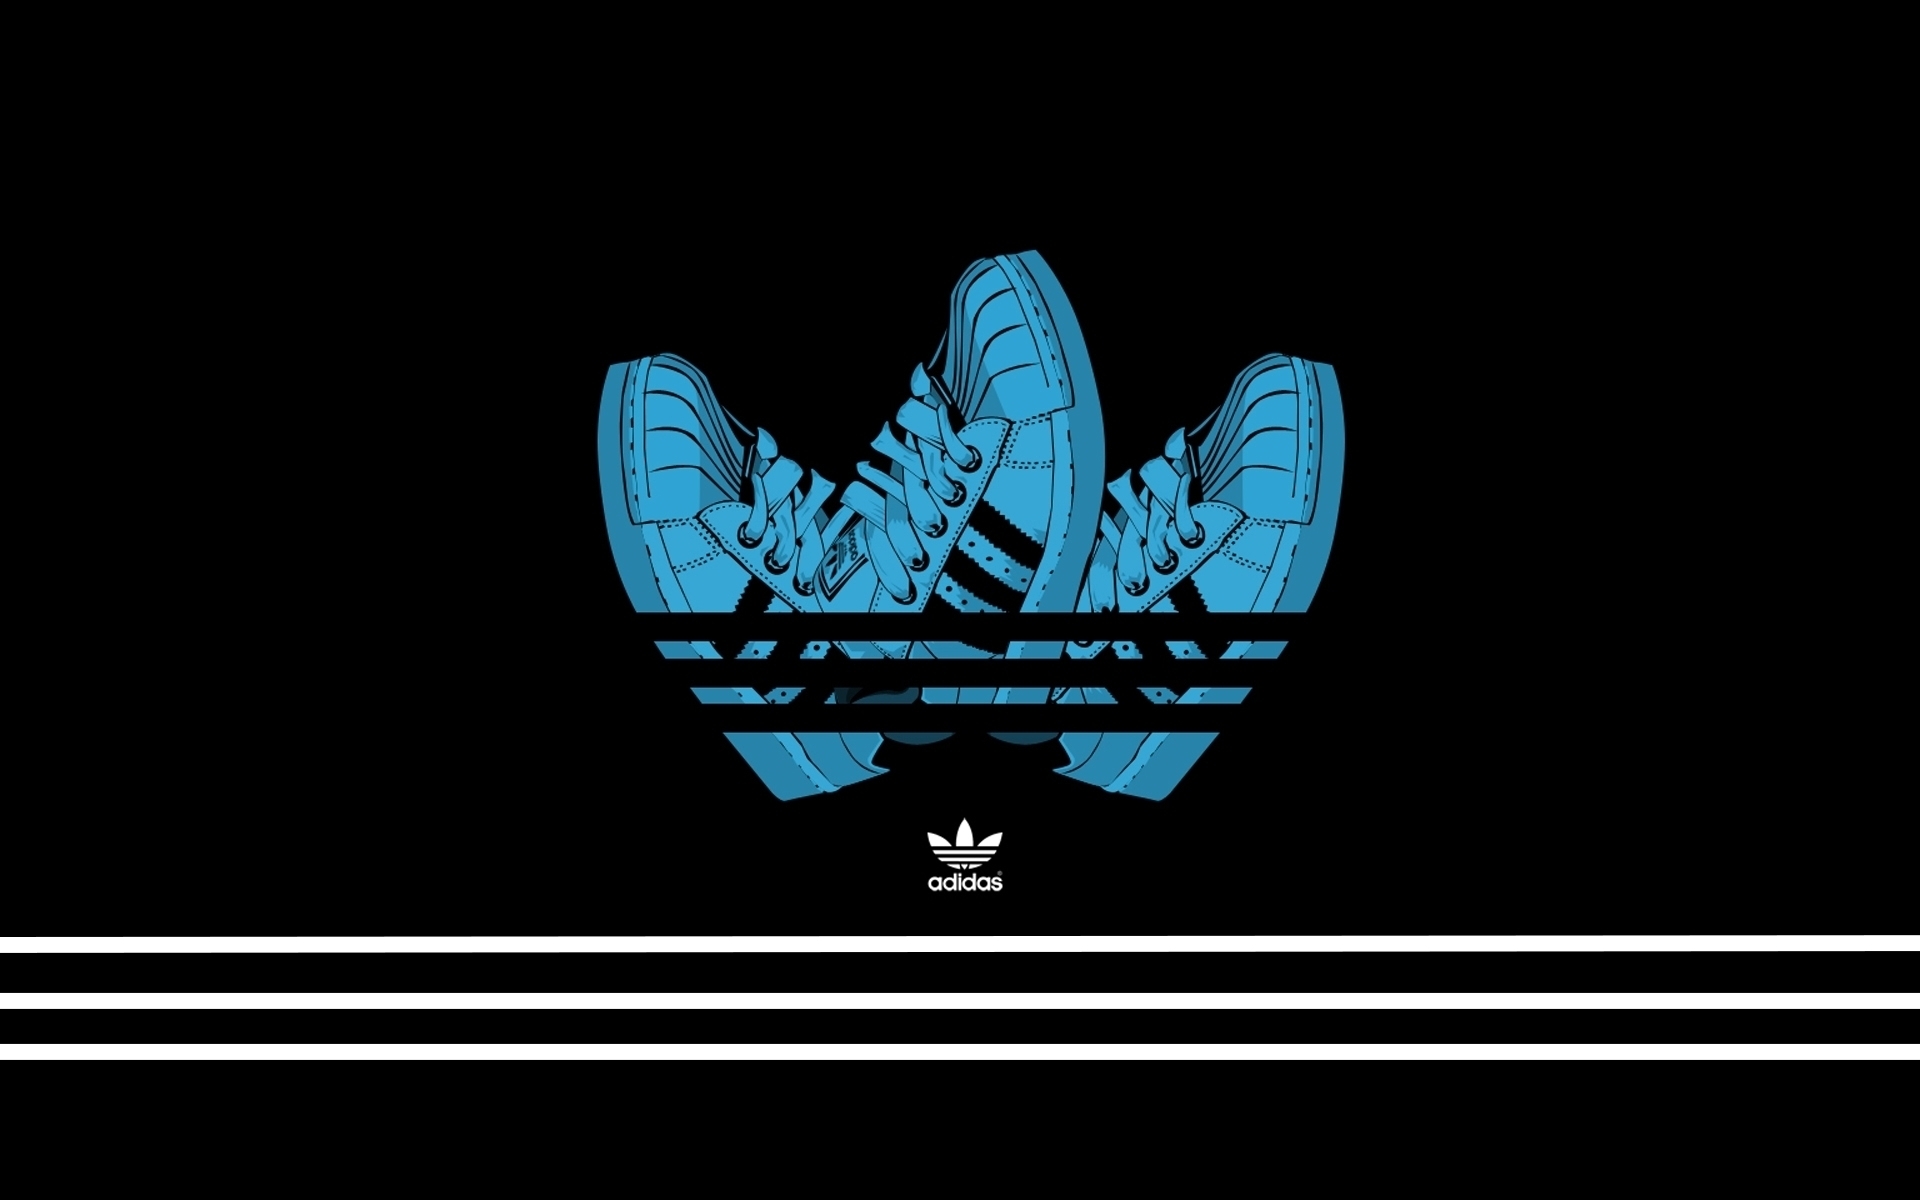 Adidas Creative Logo Design for 1920 x 1200 widescreen resolution